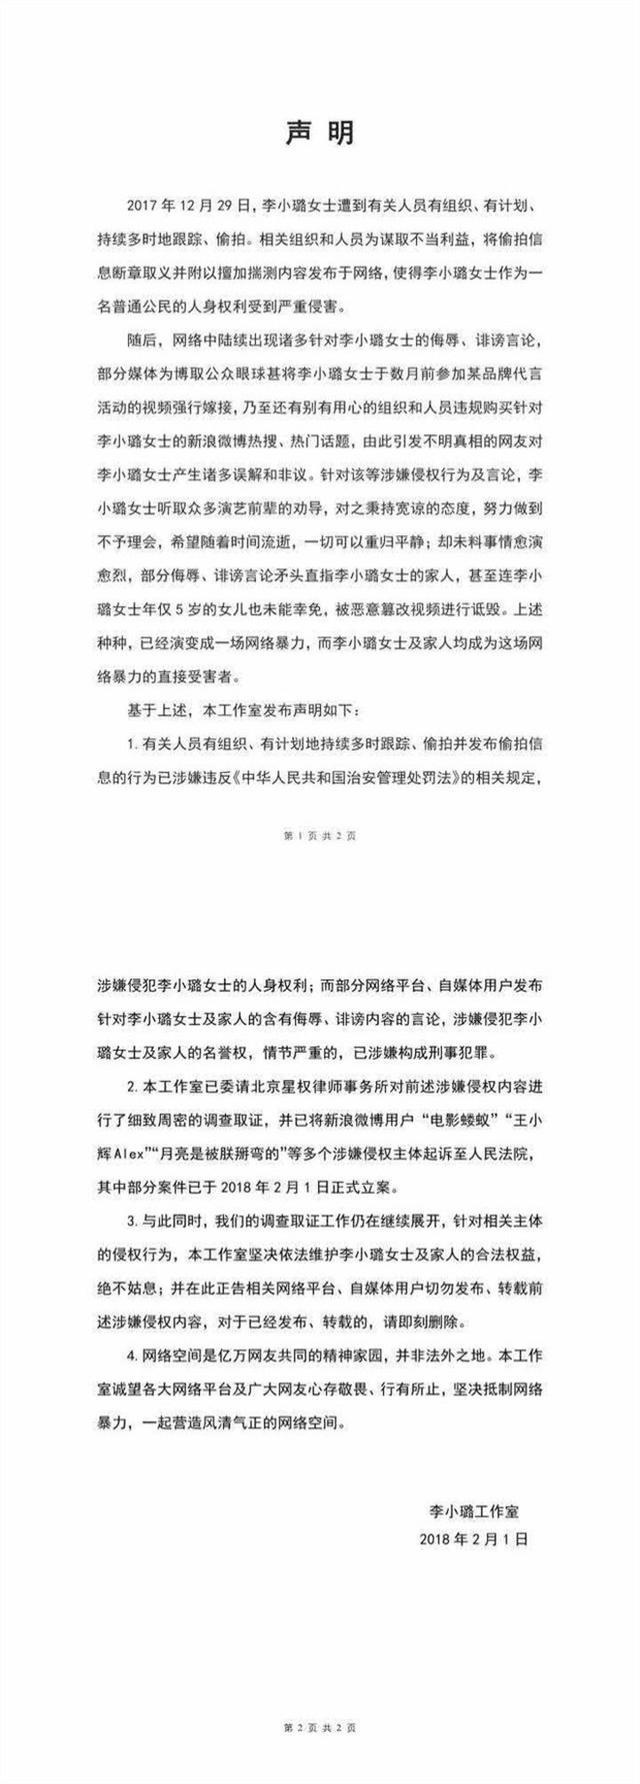 李小璐工作室一纸诉状起诉违法账号并郑重发布